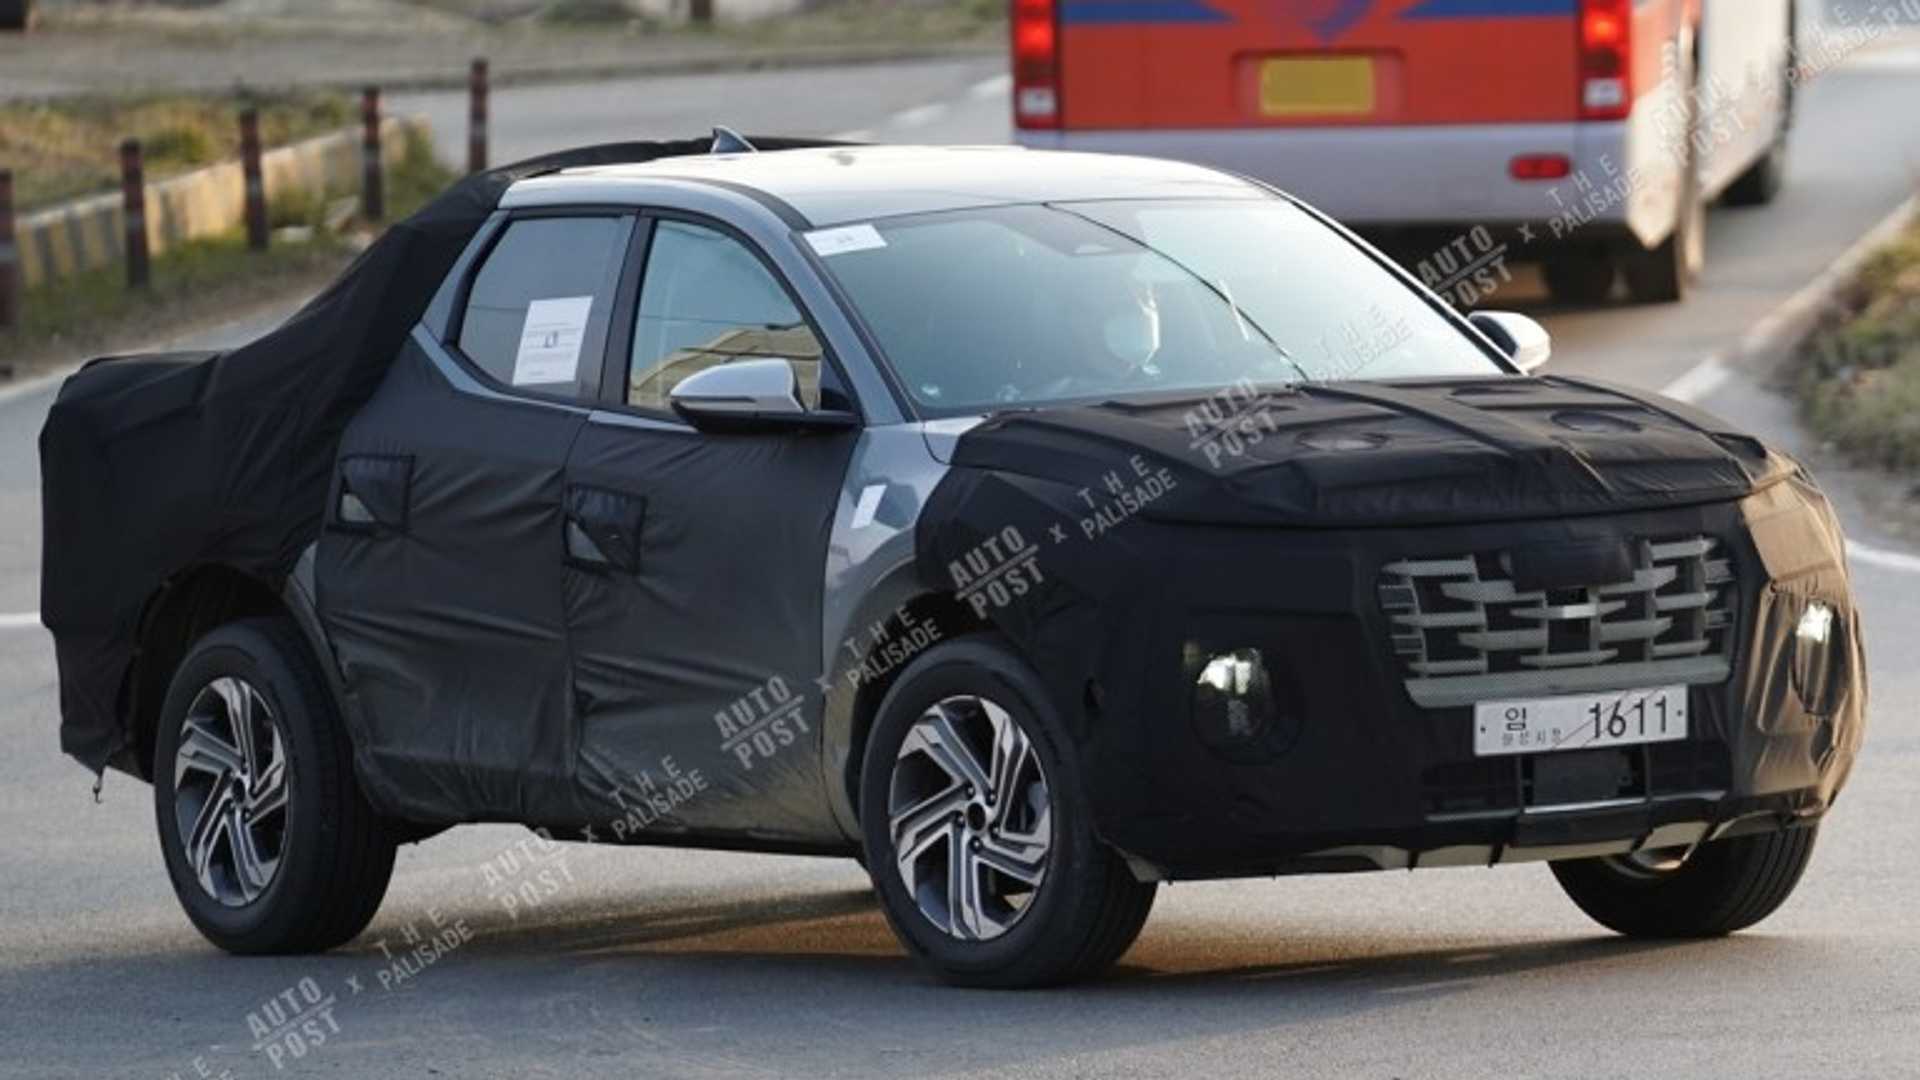 Hyundai Santa Cruz aparece camuflada em movimento com disfarces pretos principalmente na frente cobrindo a grade e para-choques